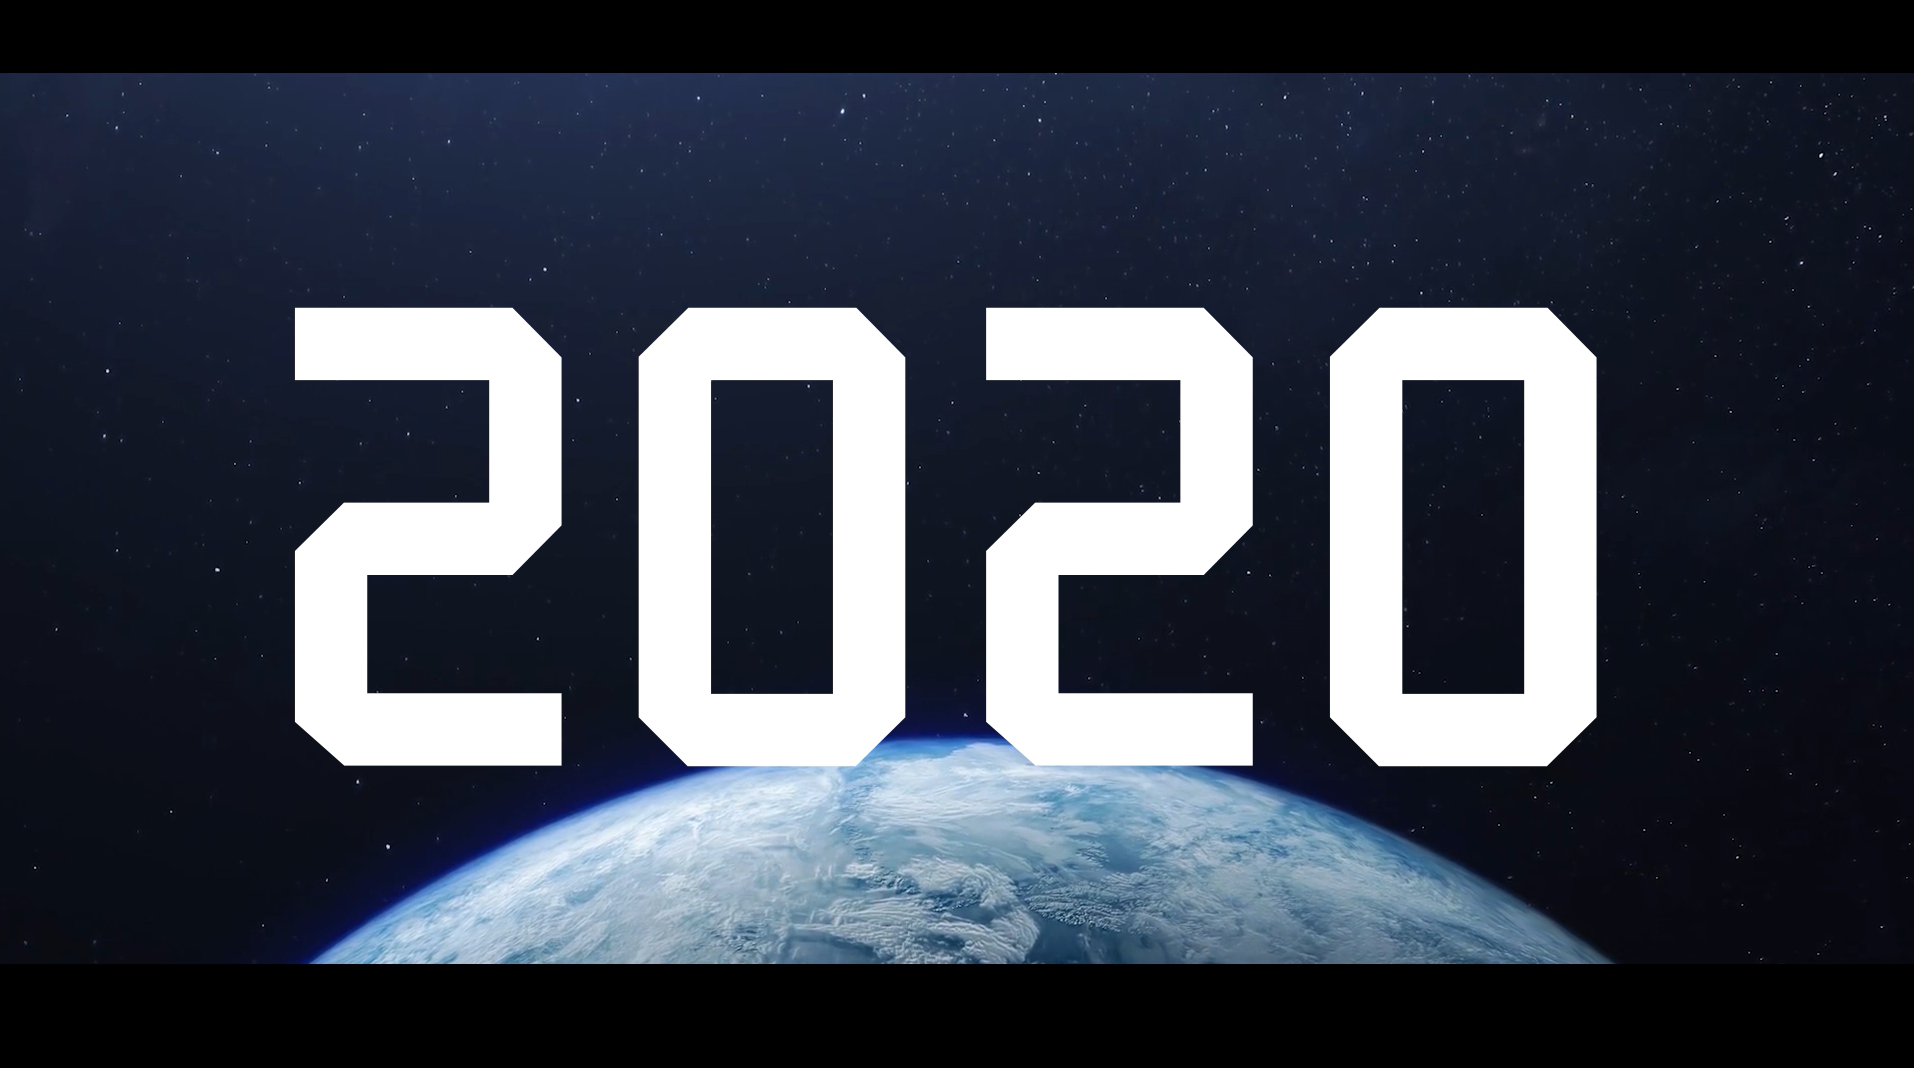 鏖战 2020：当“难”之年，致敬当战“之年